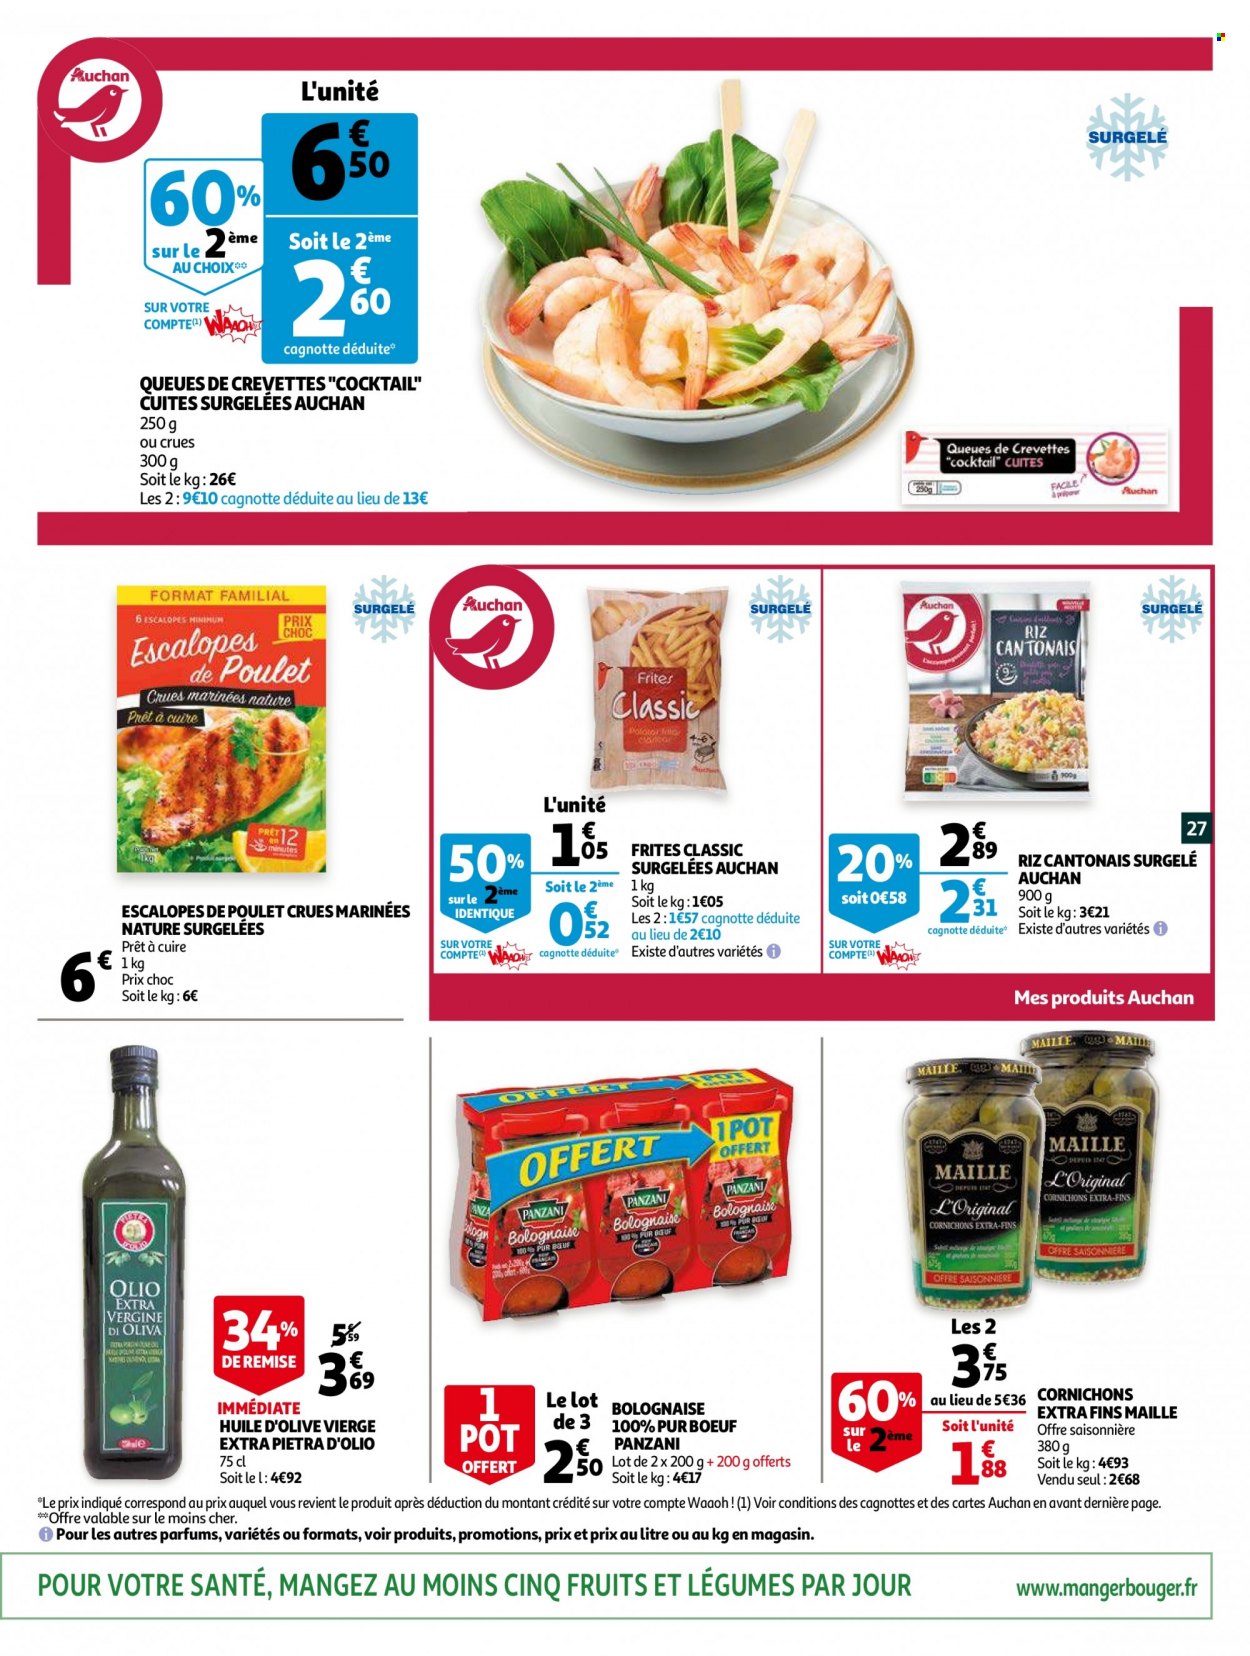 thumbnail - Catalogue Auchan - 19/01/2022 - 25/01/2022 - Produits soldés - escalope, crevettes, riz cantonais, frites, cornichons, Panzani, riz, Maille, huile, huile d'olive vierge extra, huile d'olive. Page 27.